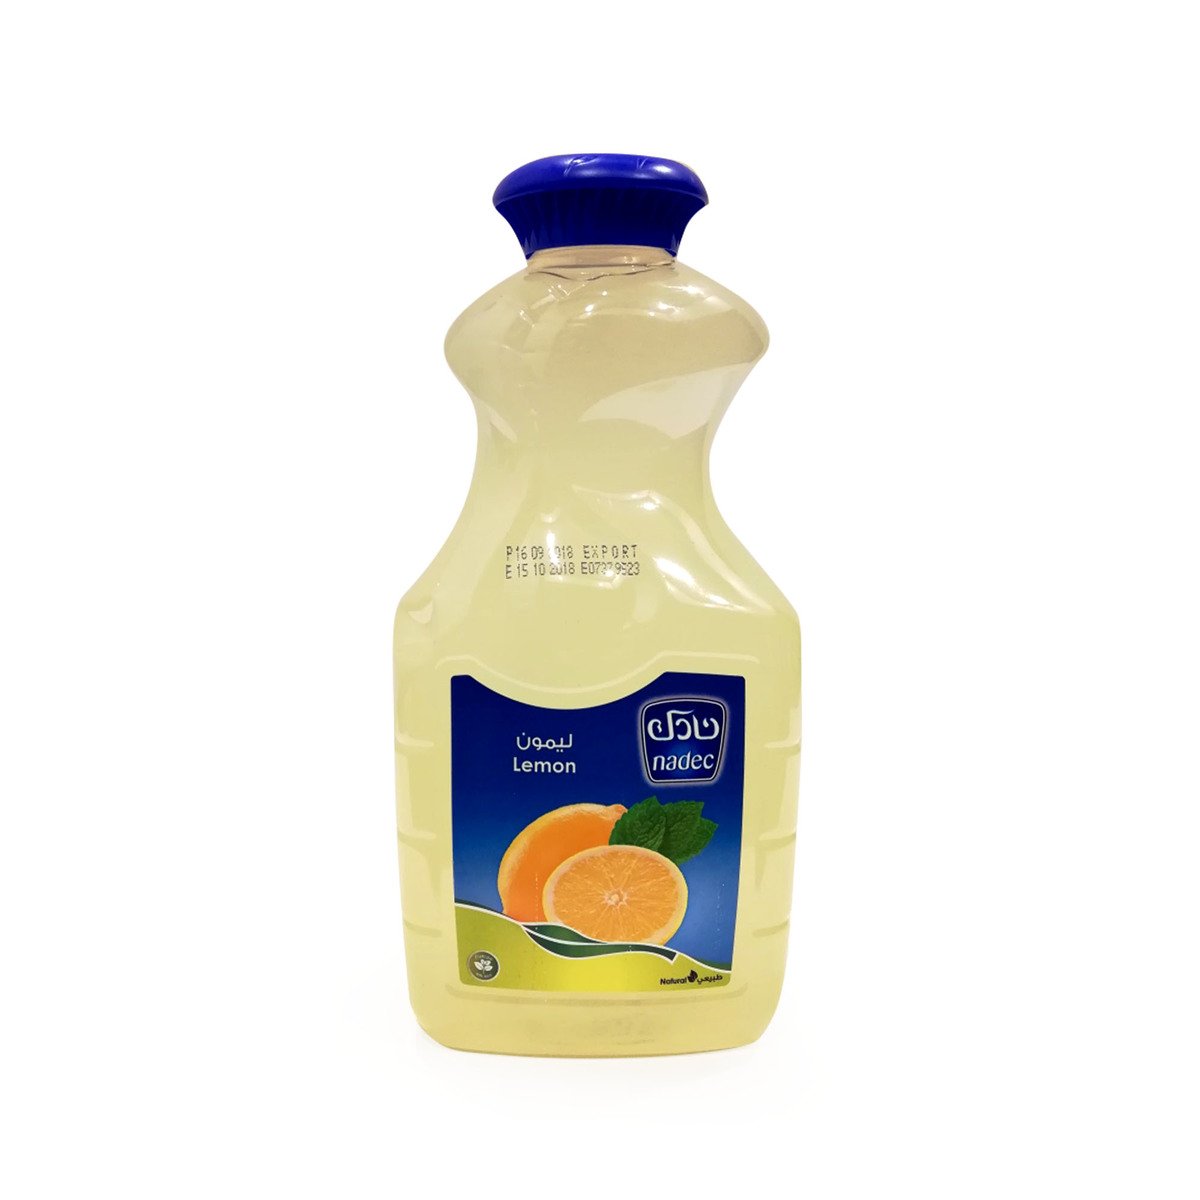 Nadec Lemon Juice 1.5Litre